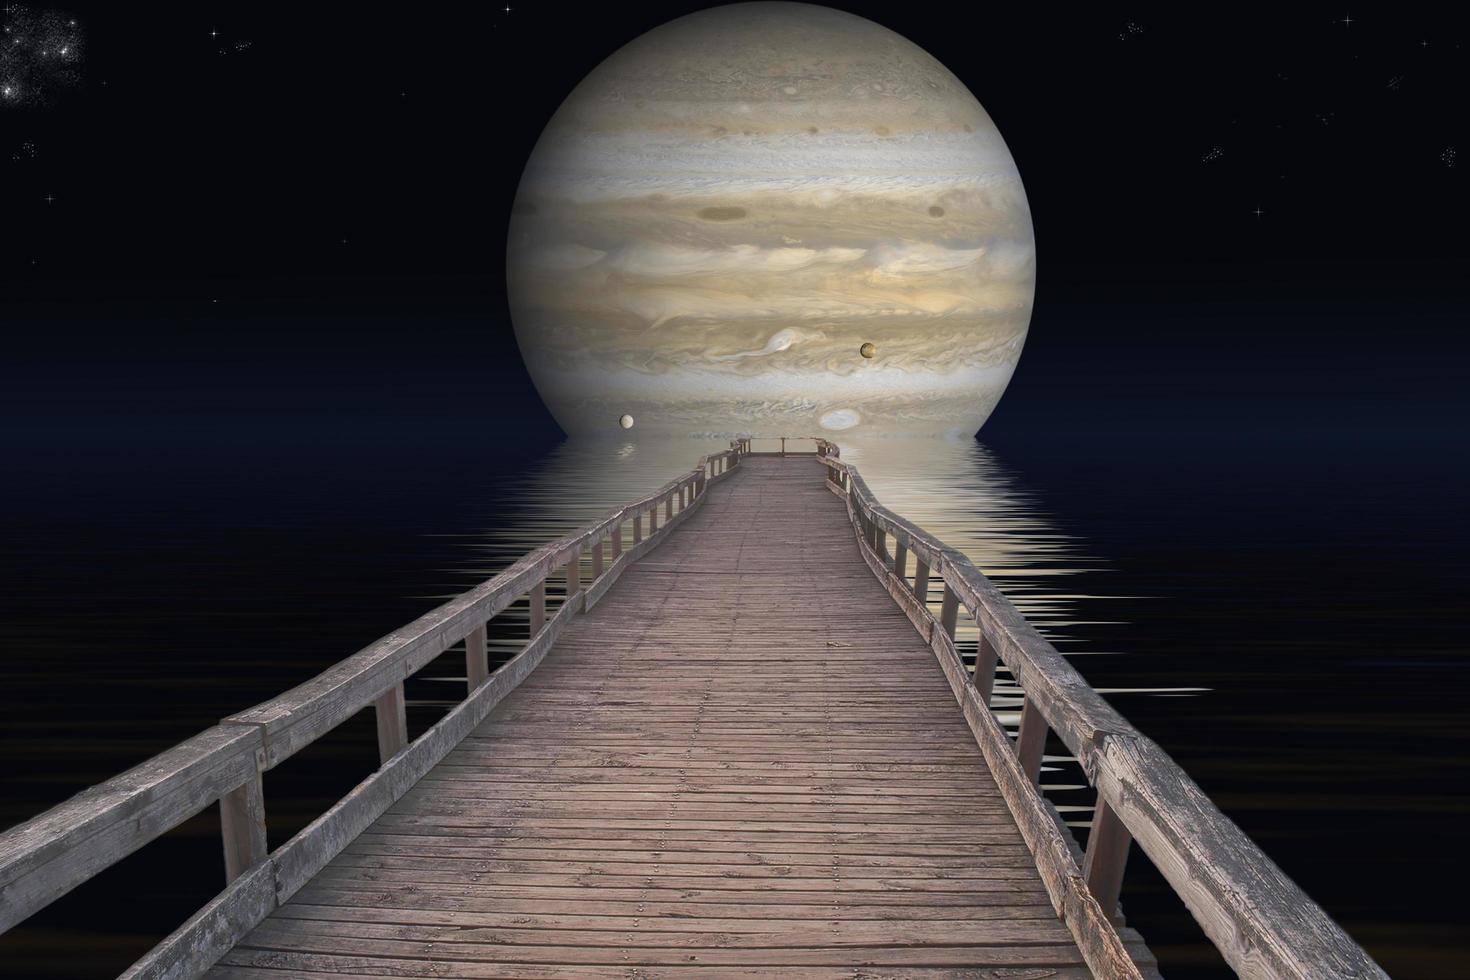 planeta júpiter. elementos del amueblado por la nasa. foto